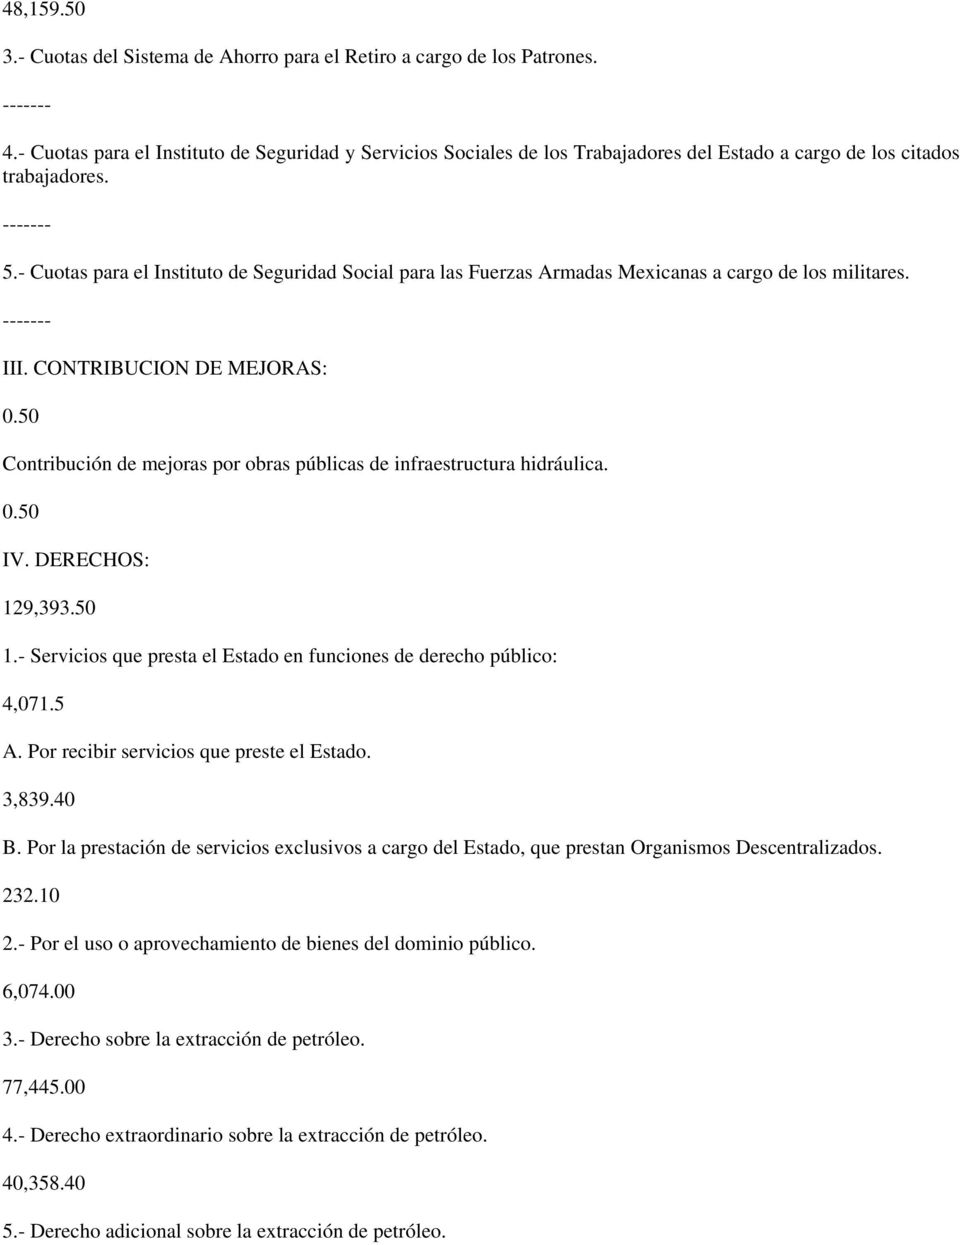 - Cuotas para el Instituto de Seguridad Social para las Fuerzas Armadas Mexicanas a cargo de los militares. ------- III. CONTRIBUCION DE MEJORAS: 0.